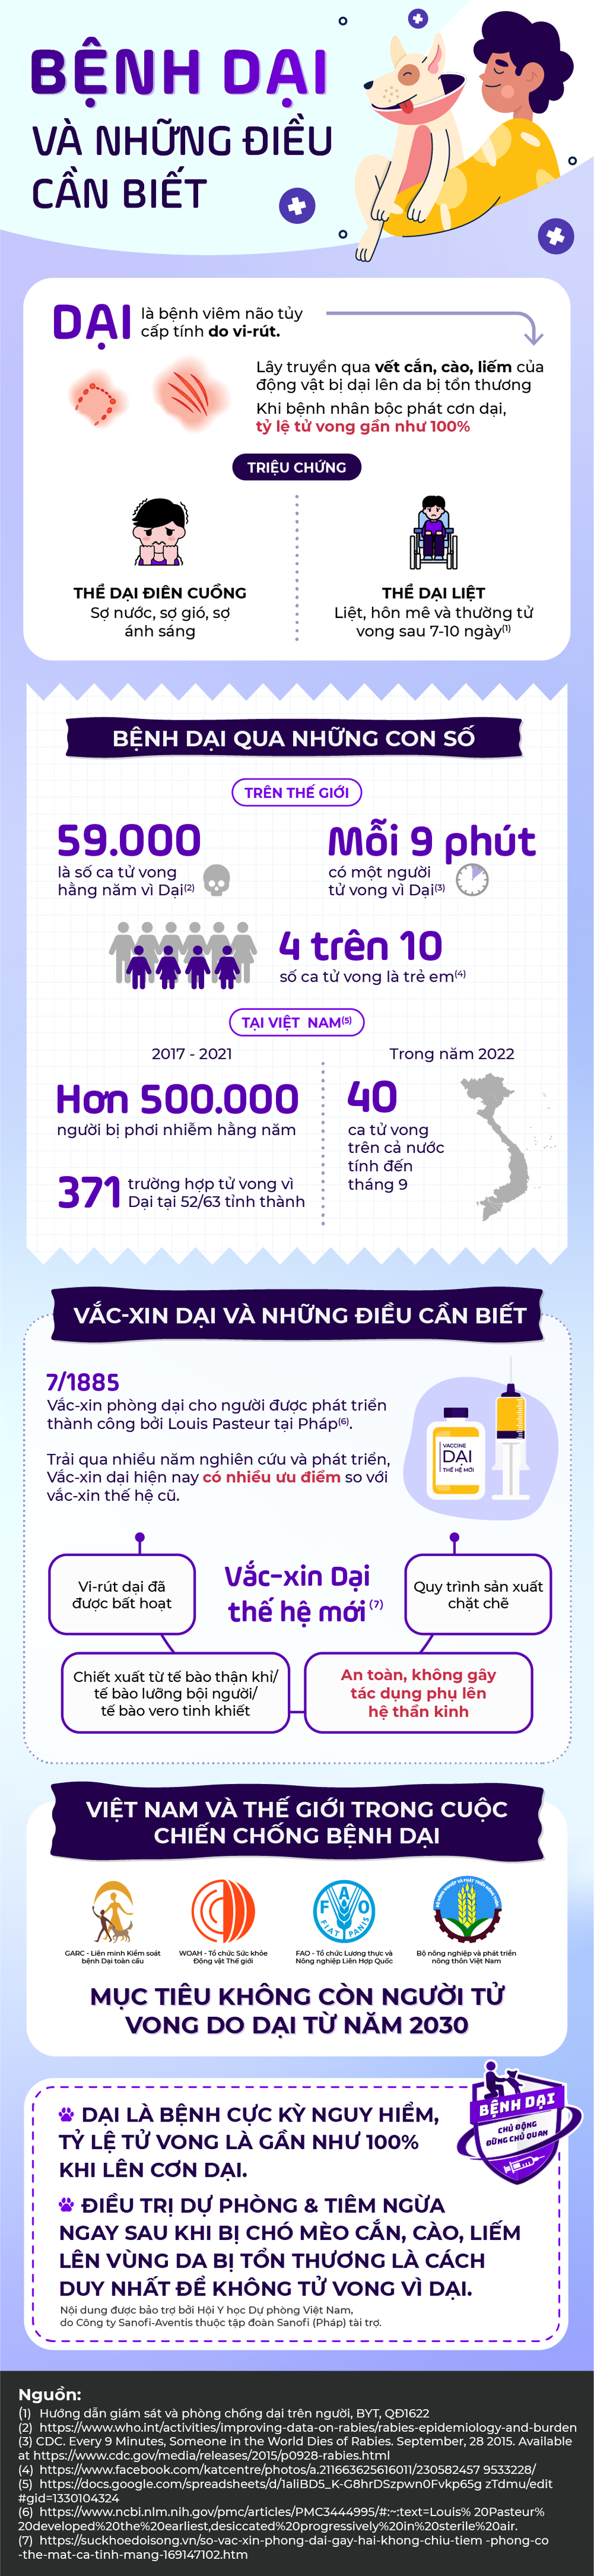 Việt Nam cùng thế giới trong nỗ lực chấm dứt bệnh dại từ năm 2030 - Ảnh 1.